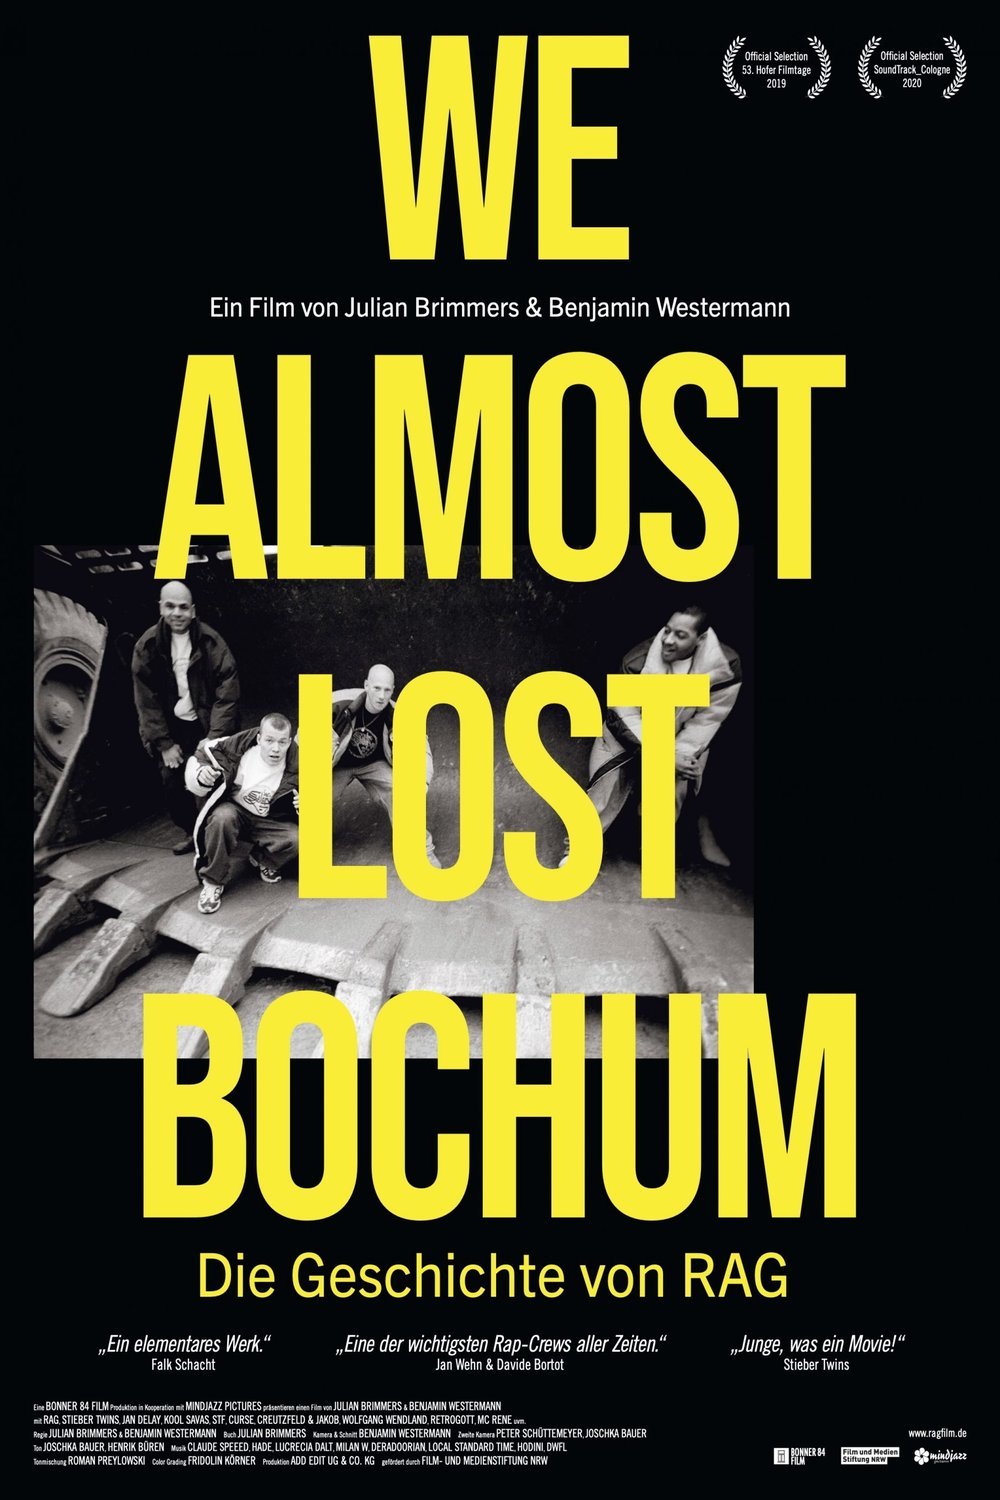 L'affiche originale du film We almost lost Bochum en allemand